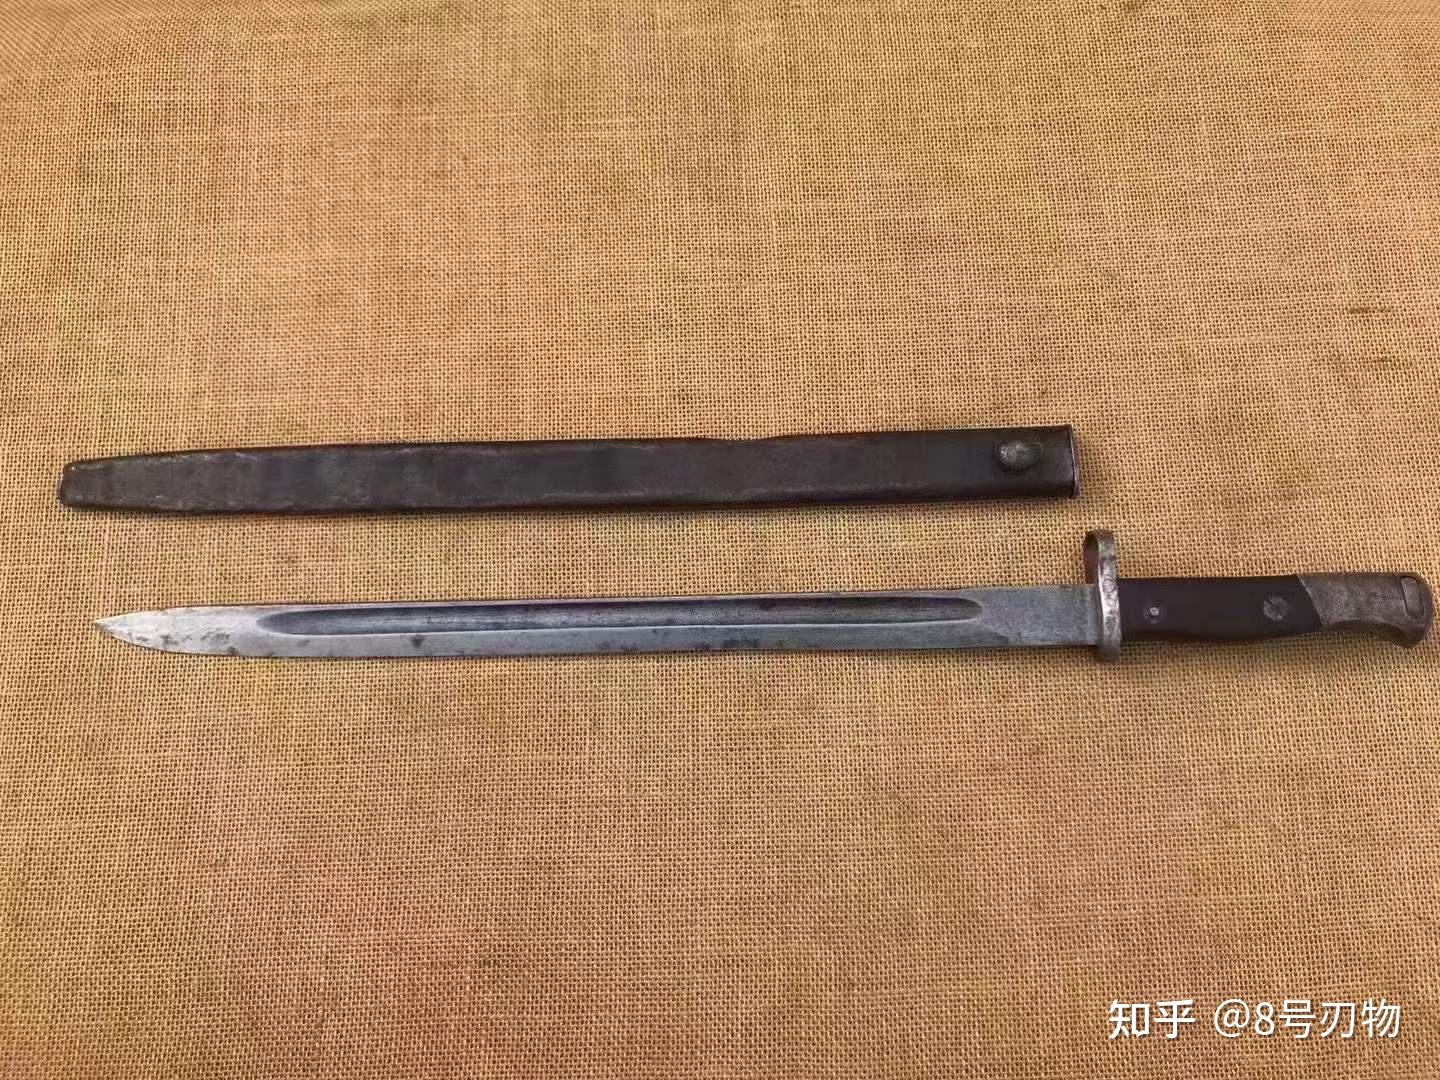 生产了这种长中正刺刀,但是即便是这么长的刺刀上木仓后依然比日军的